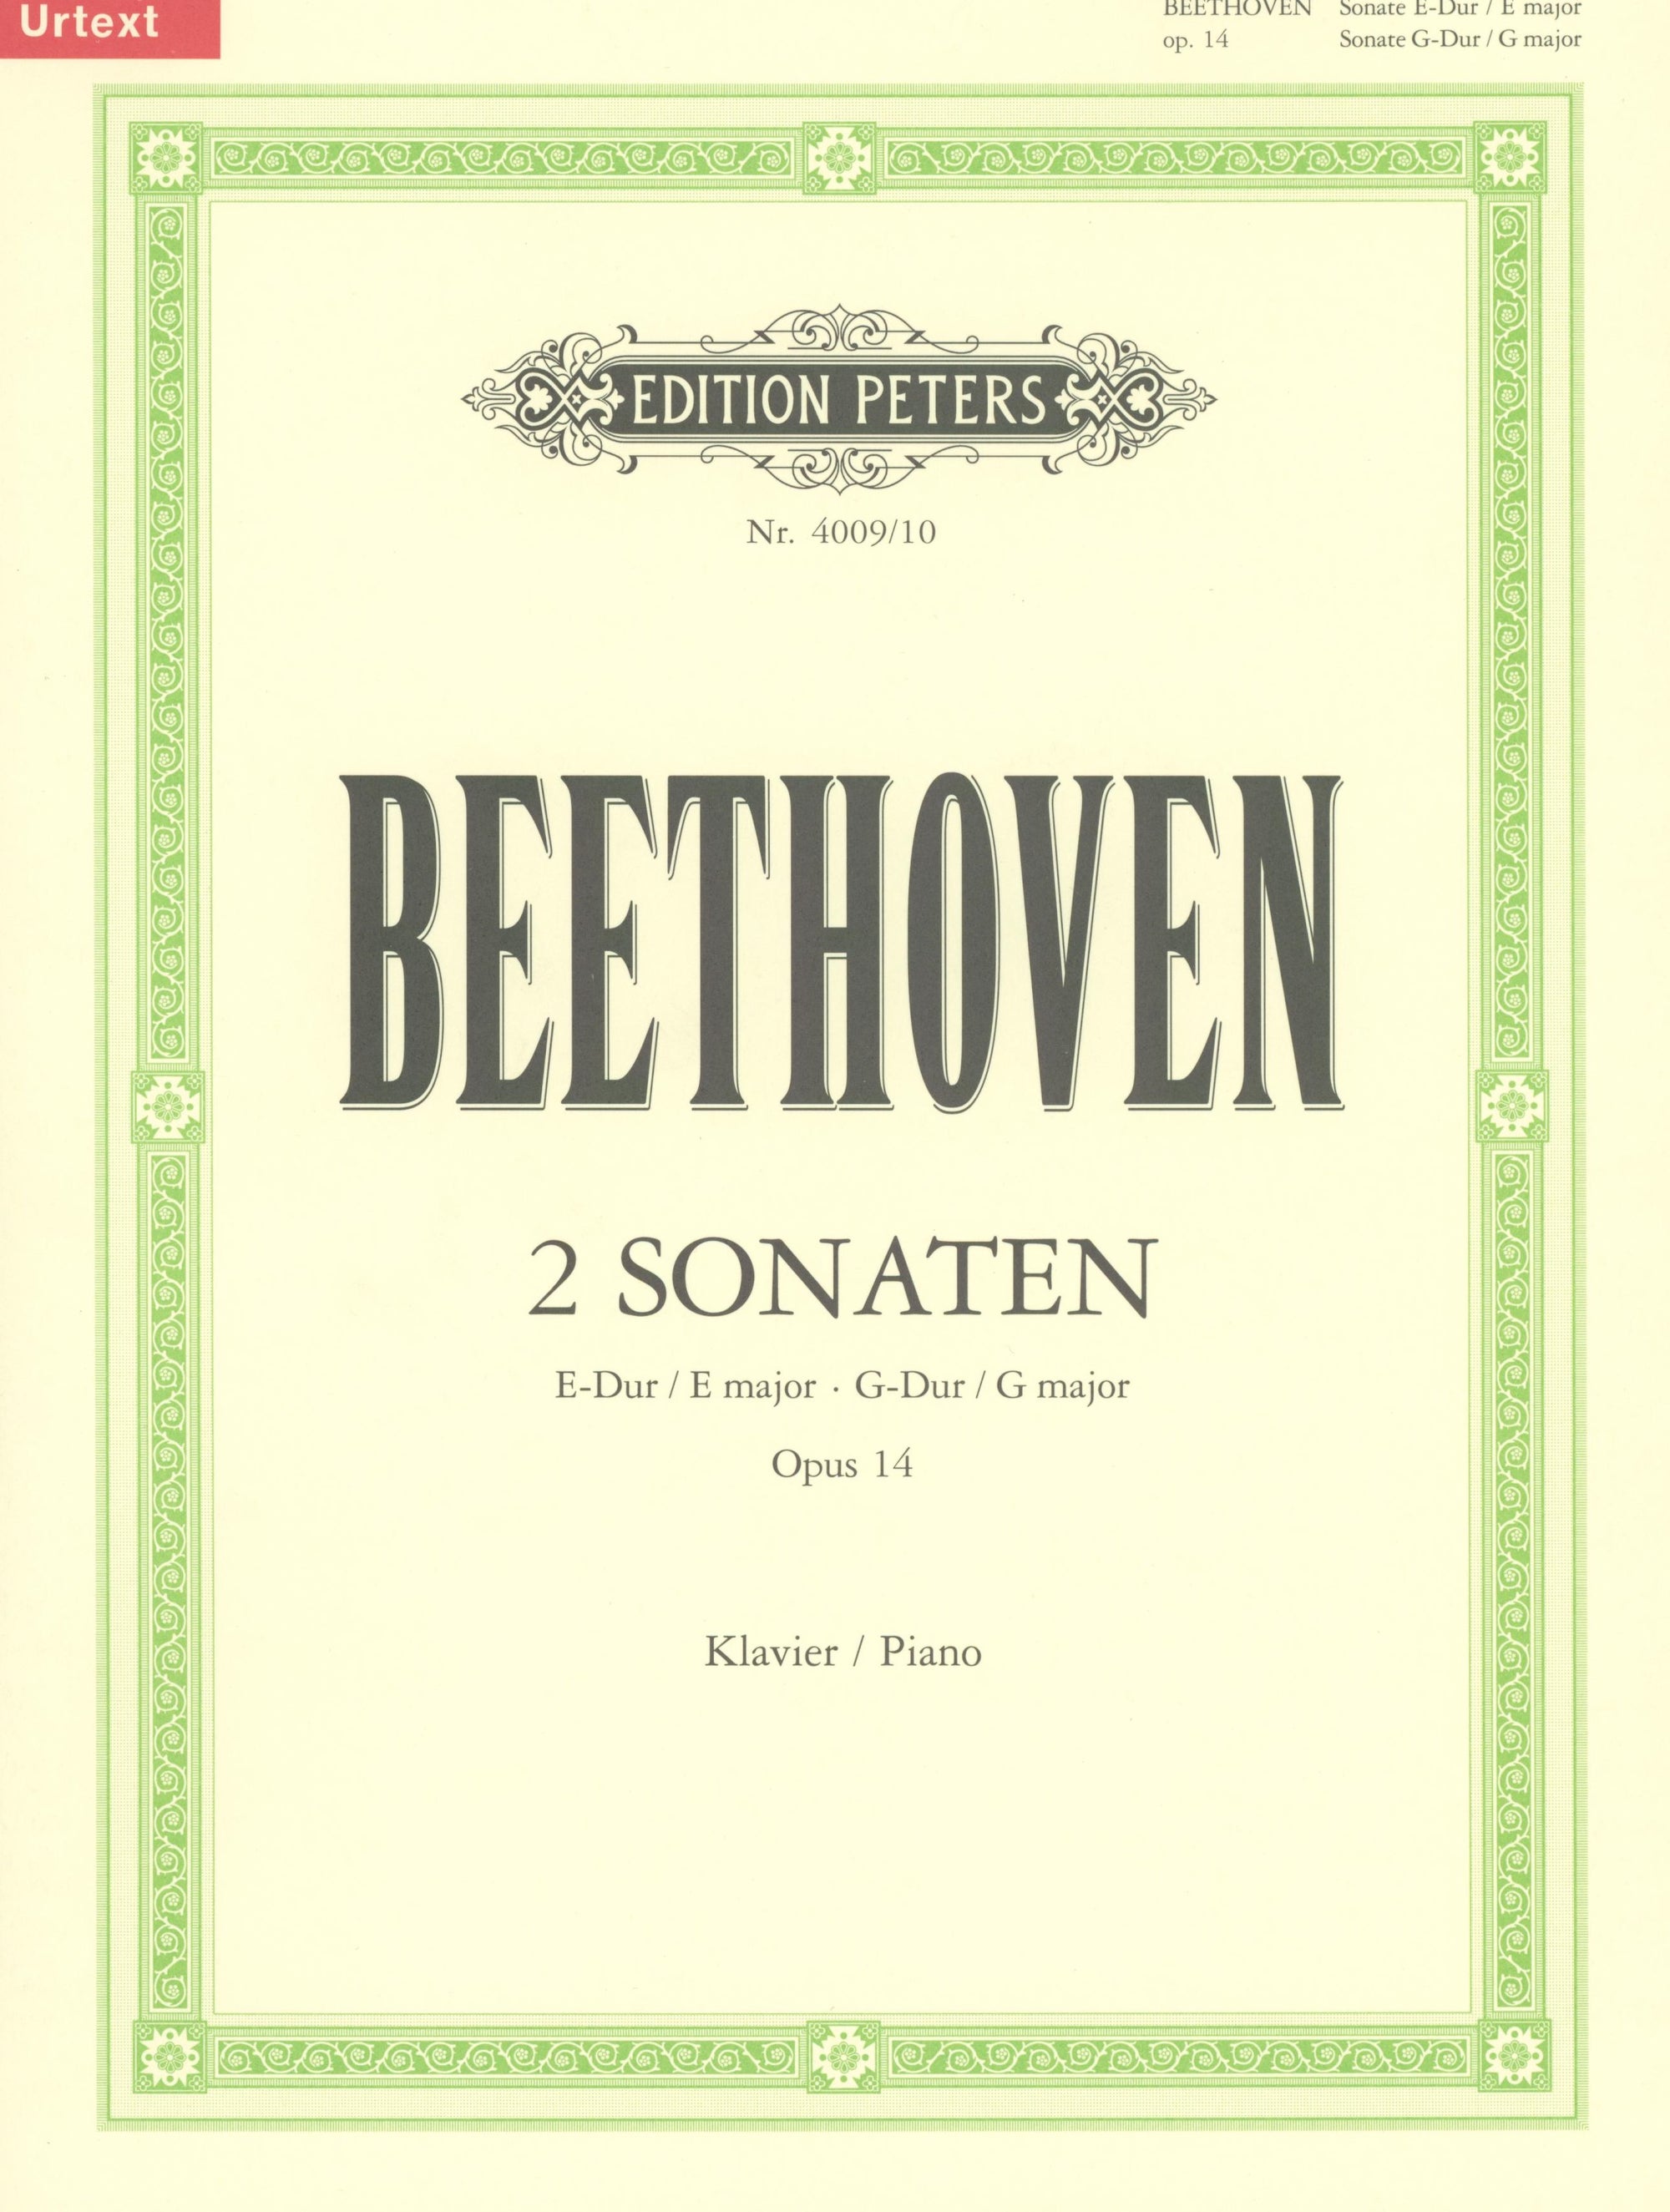 Beethoven: Piano Sonatas, Op. 14